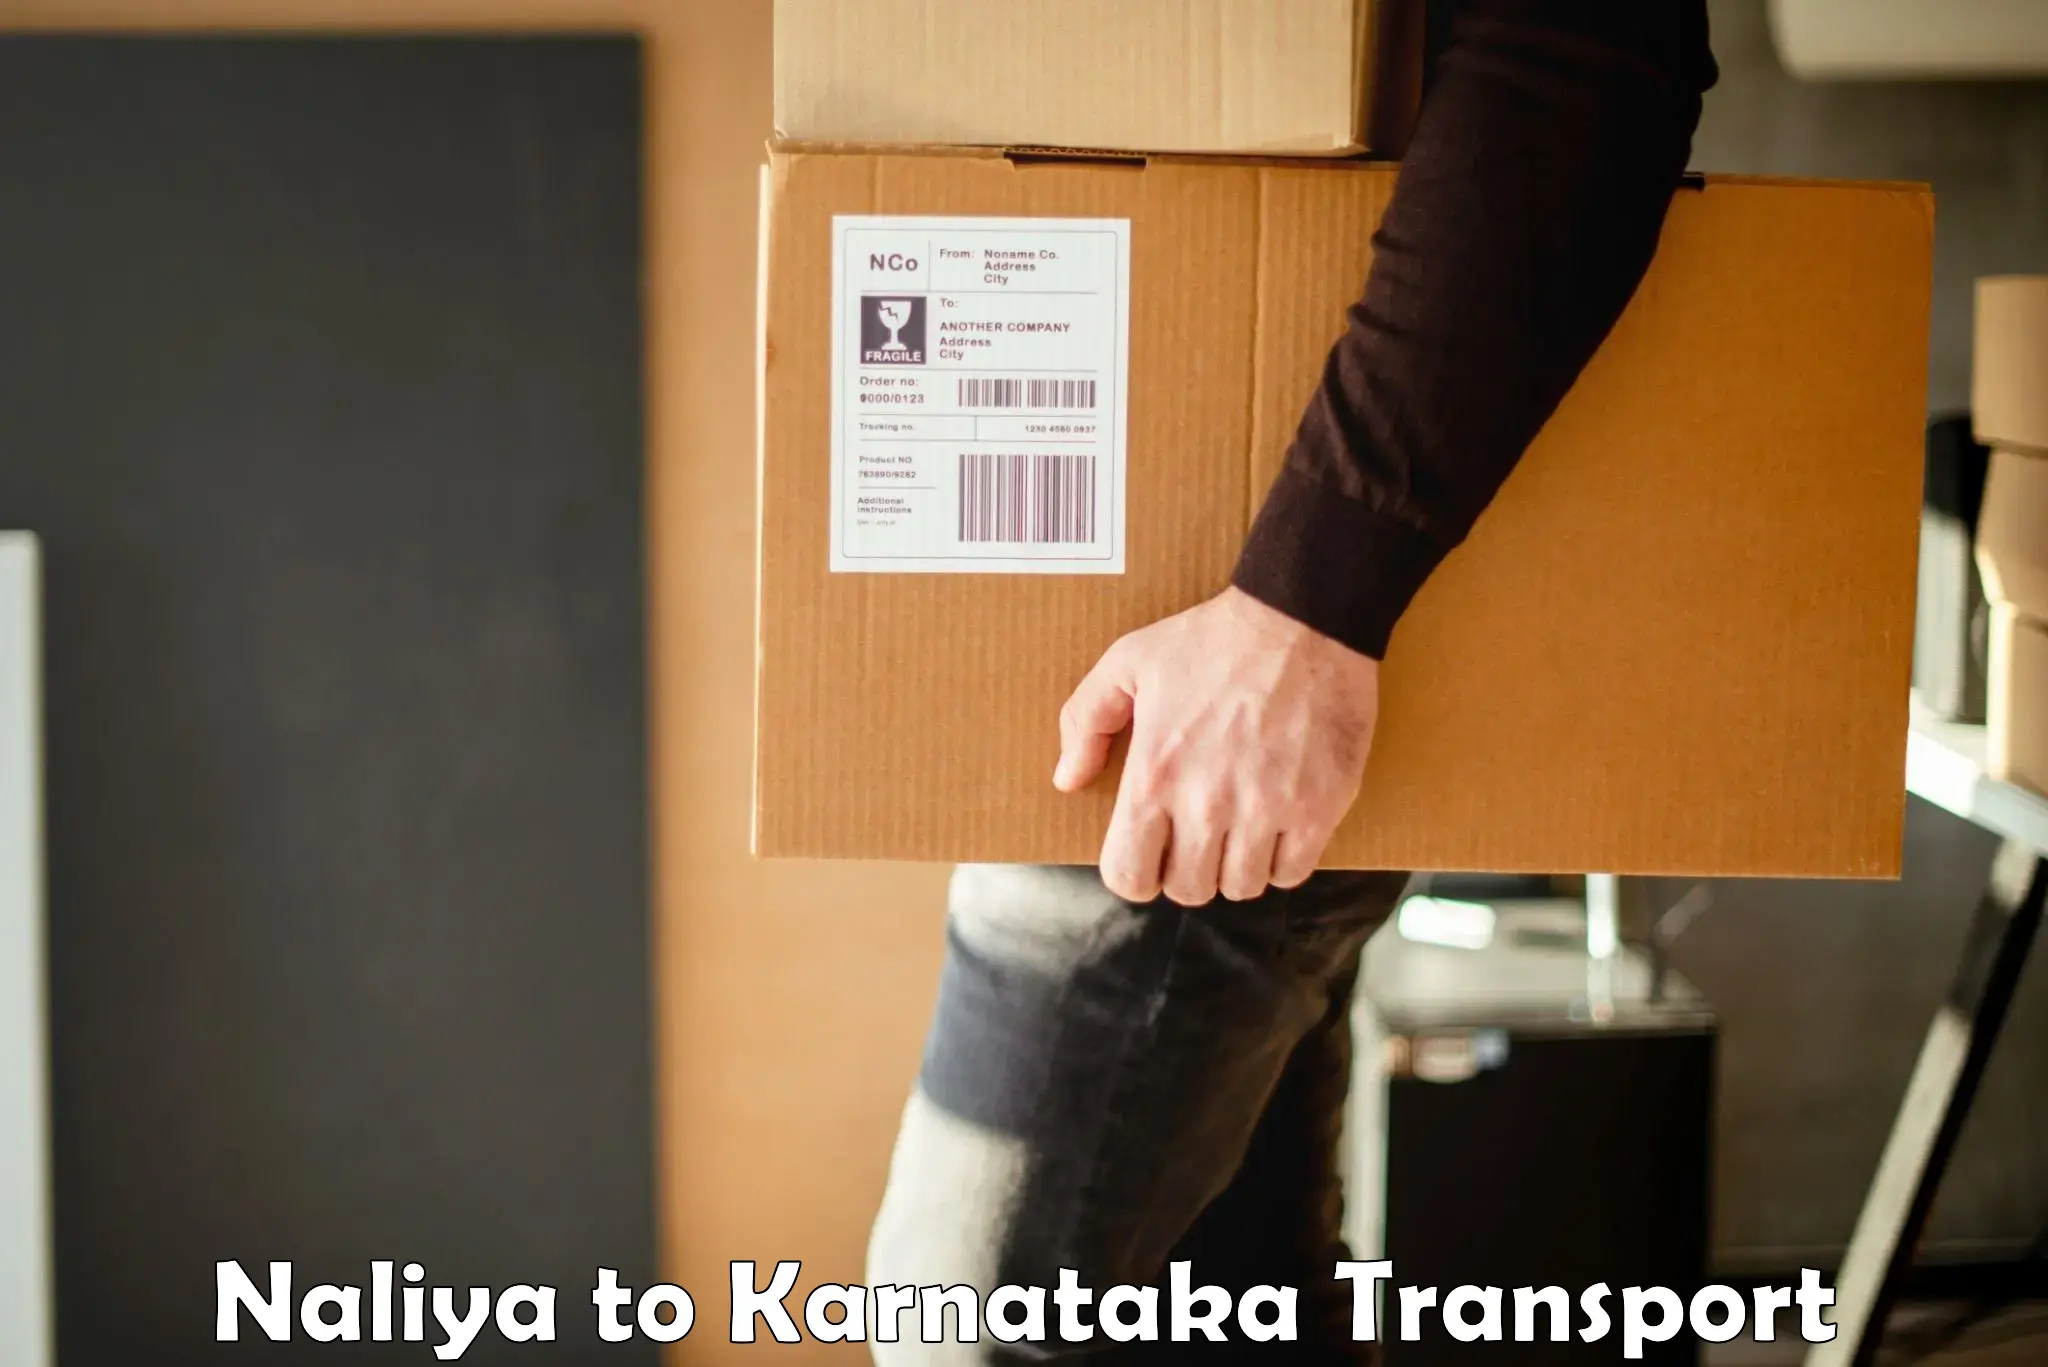 Transport shared services Naliya to Jayanagar